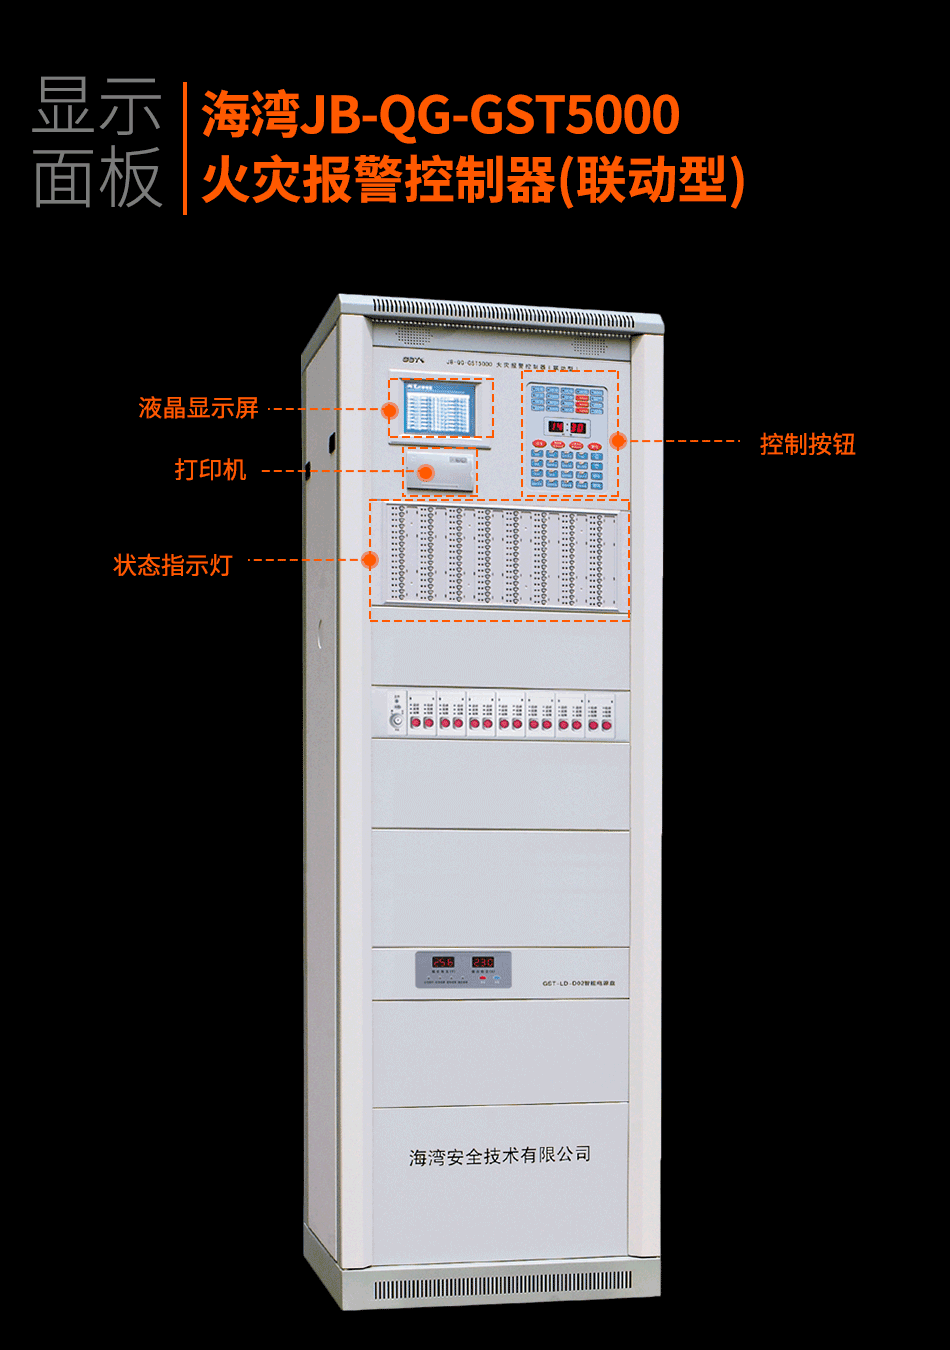 海湾JB-QG-GST5000火灾报警控制器(联动型)显示面板